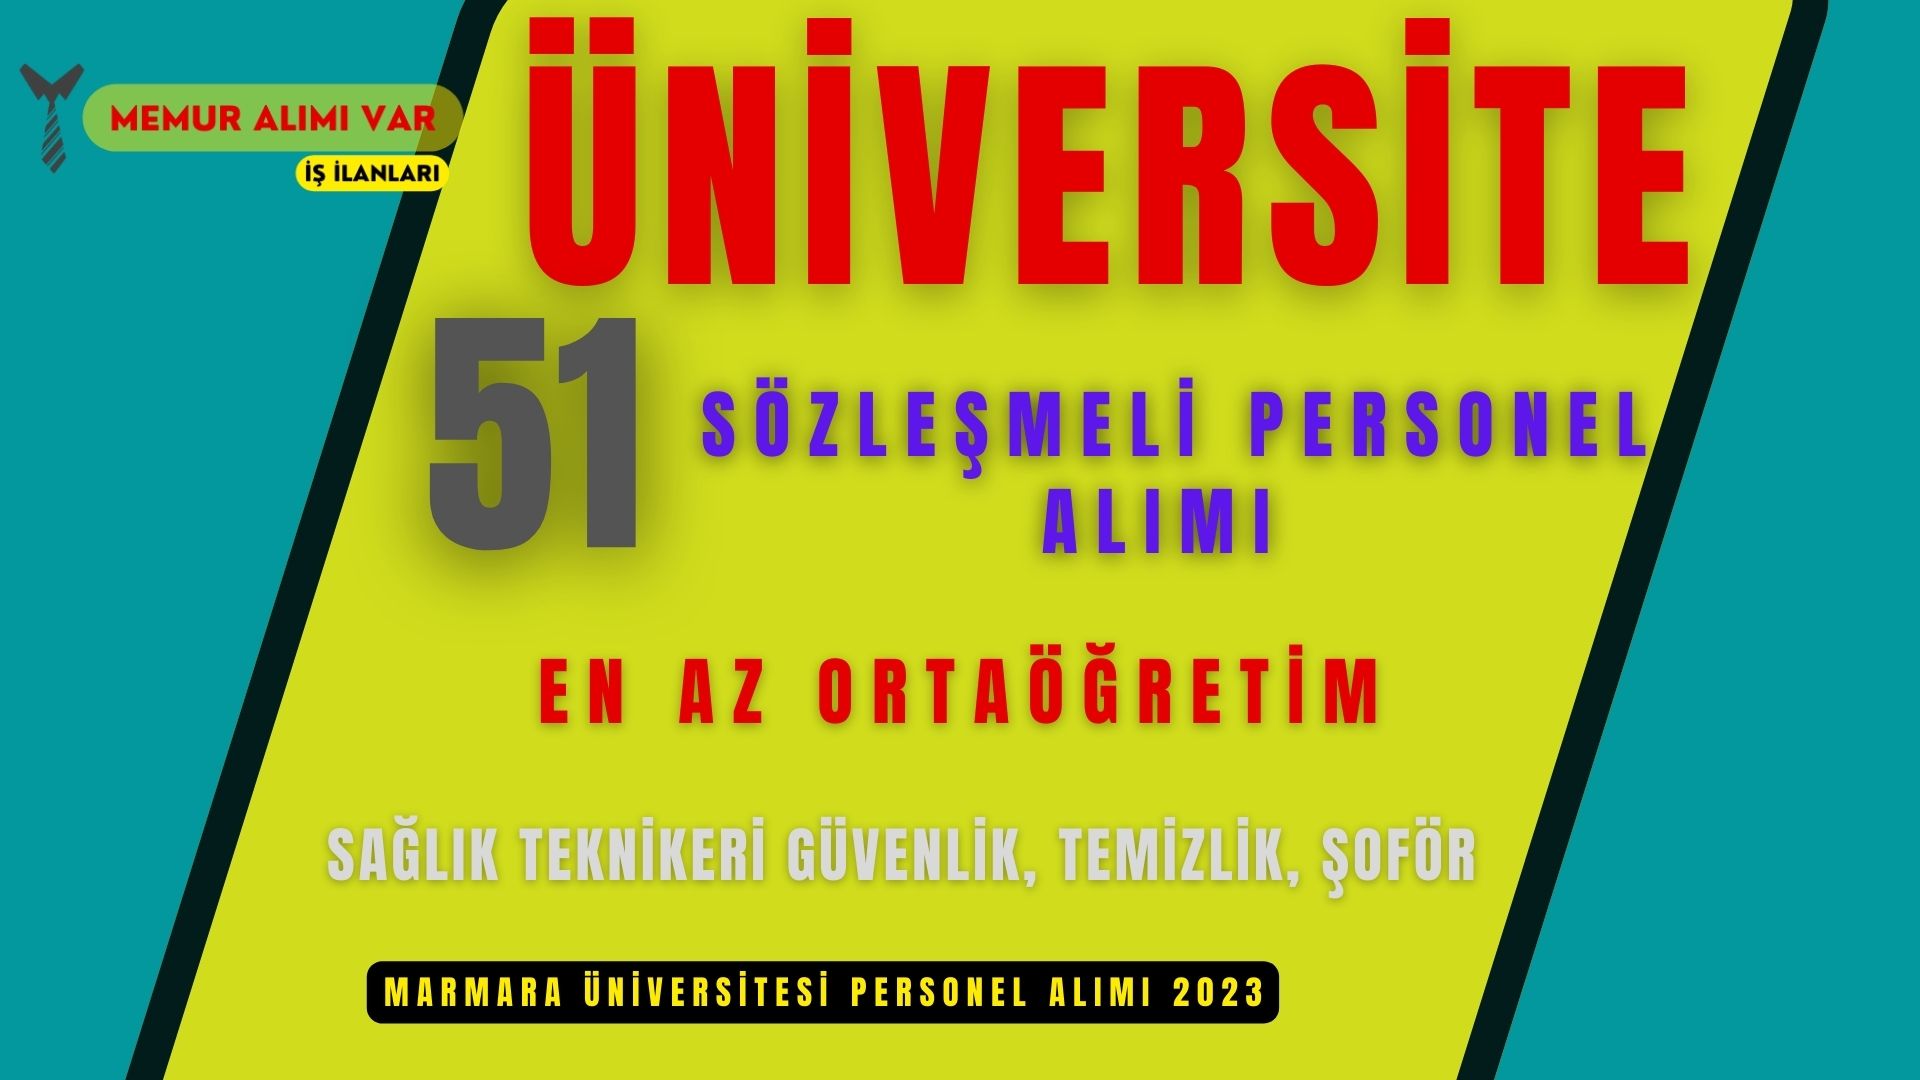 Marmara Üniversitesi 51 Personel Alım İlanı 2023 (En az ortaöğretim)